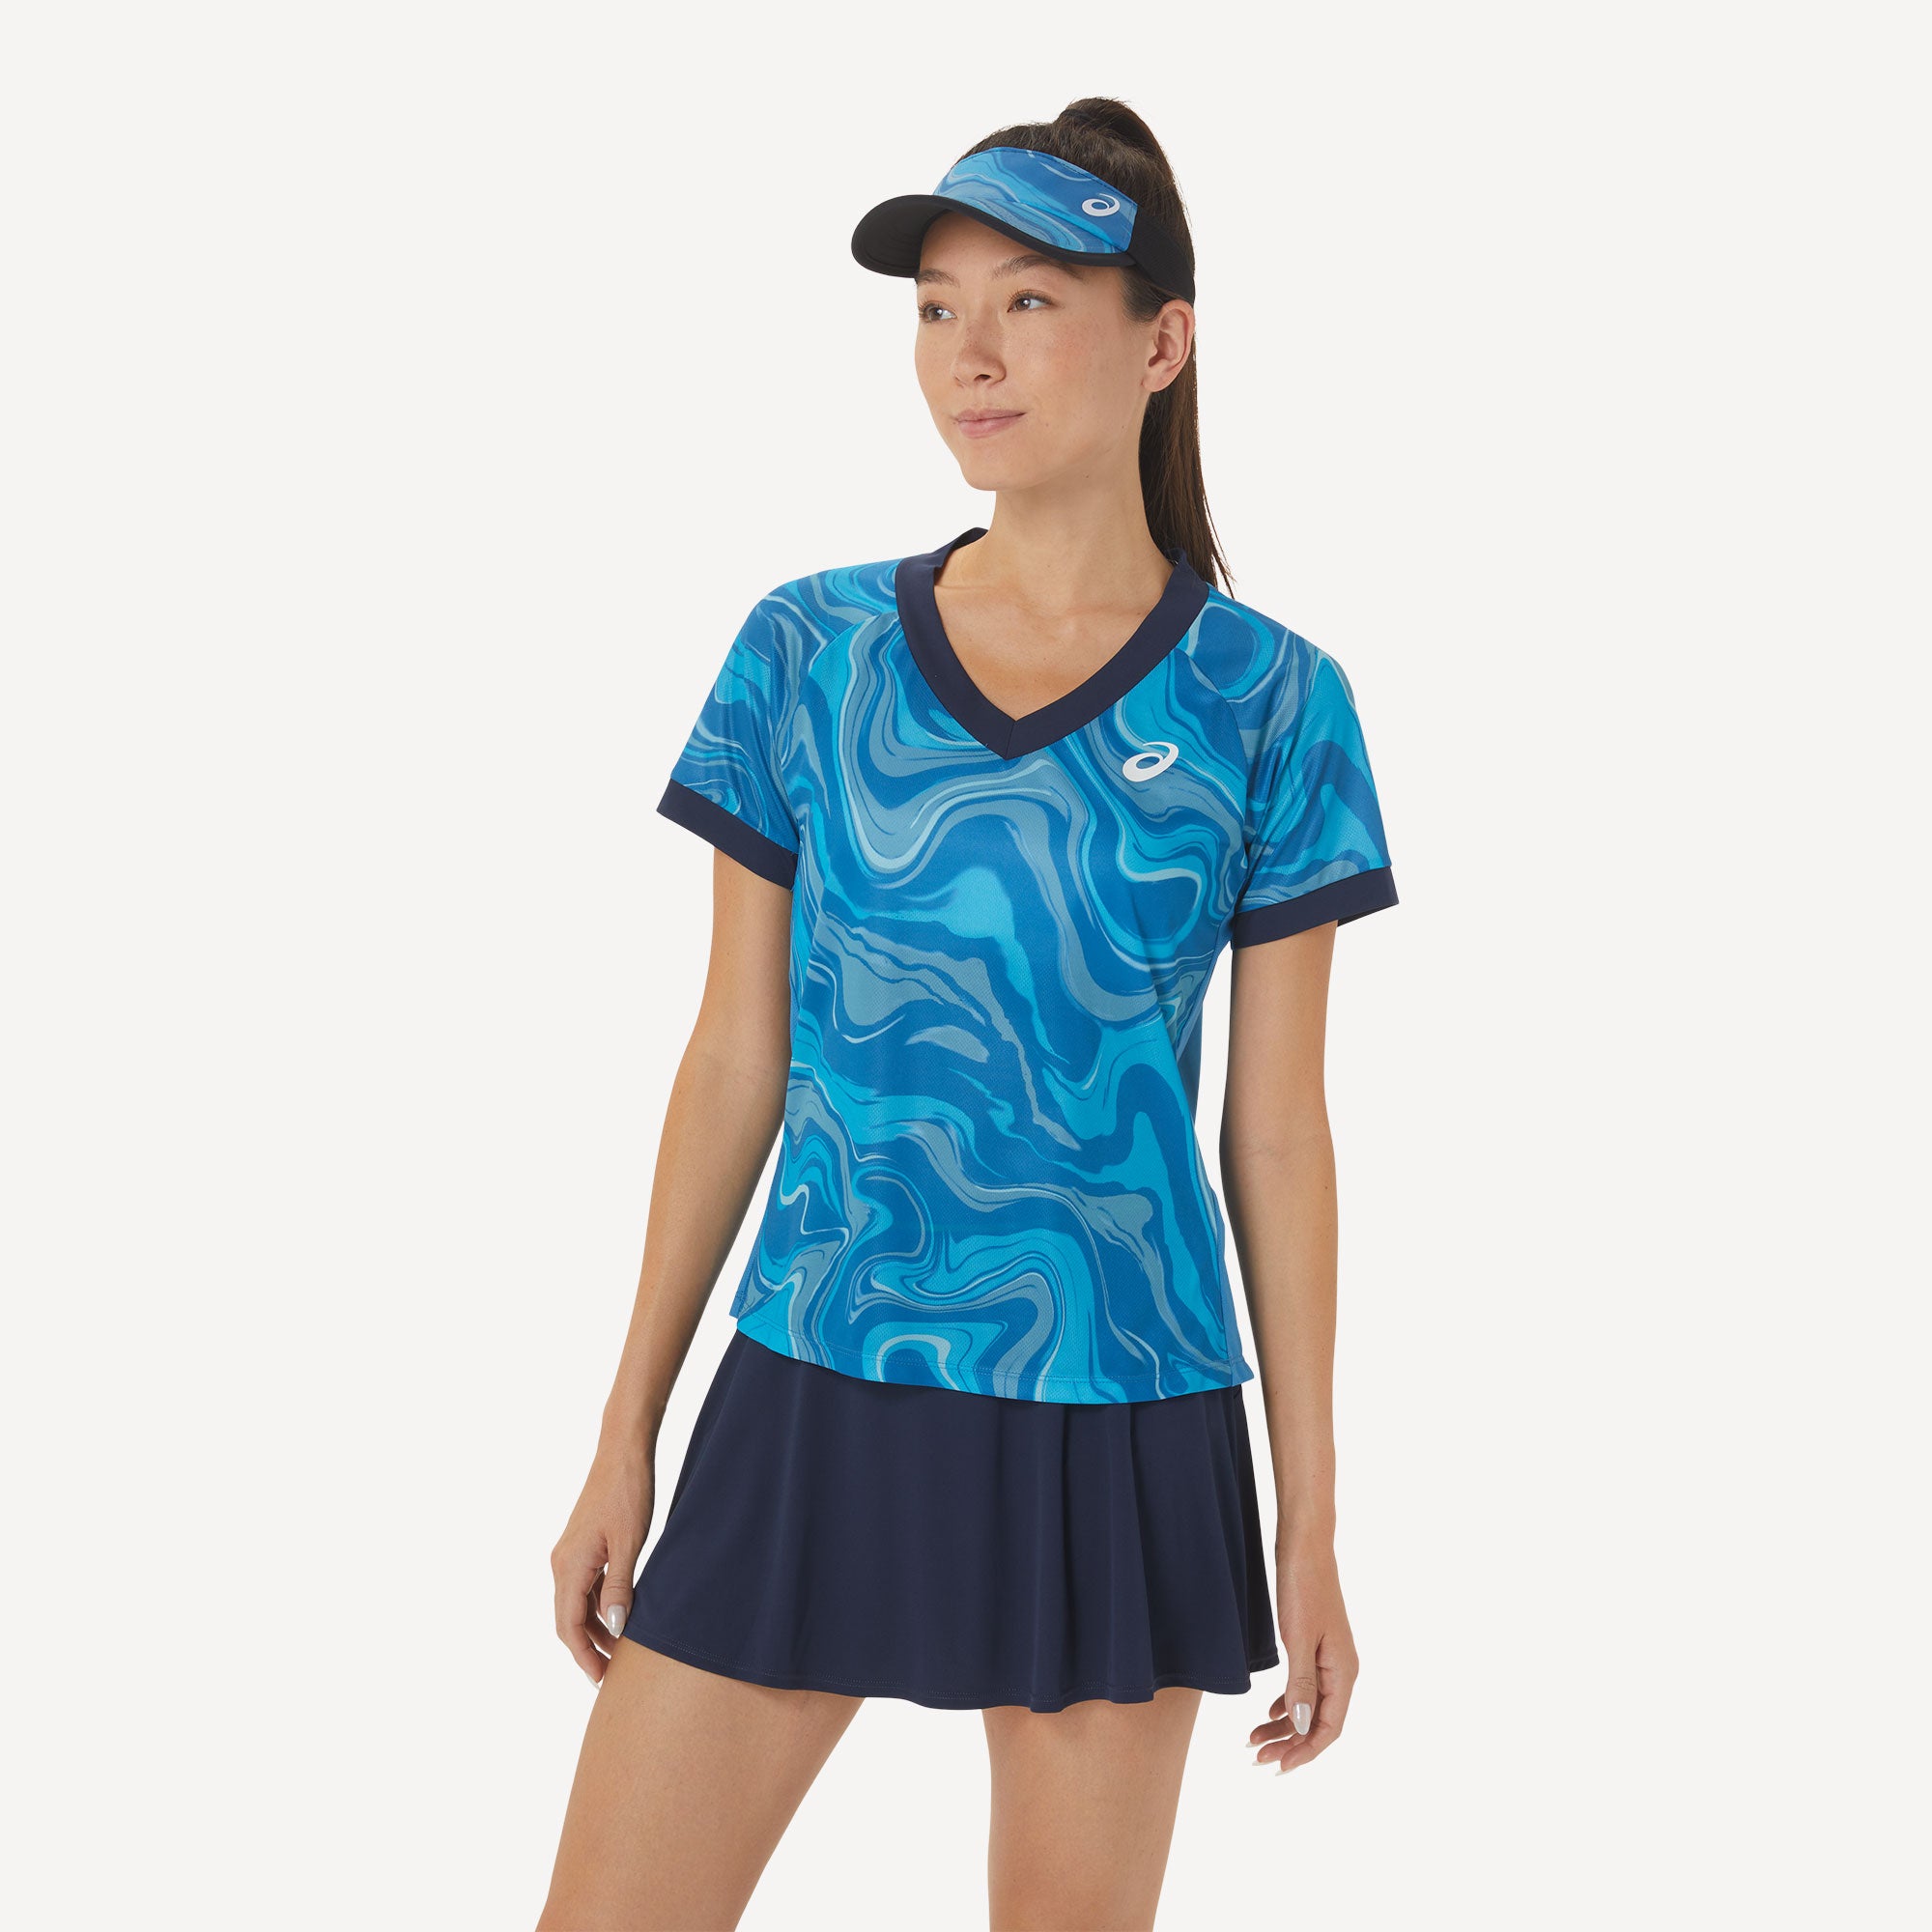 ASICS Match Women's Graphic Tennis Shirt Blue (3)